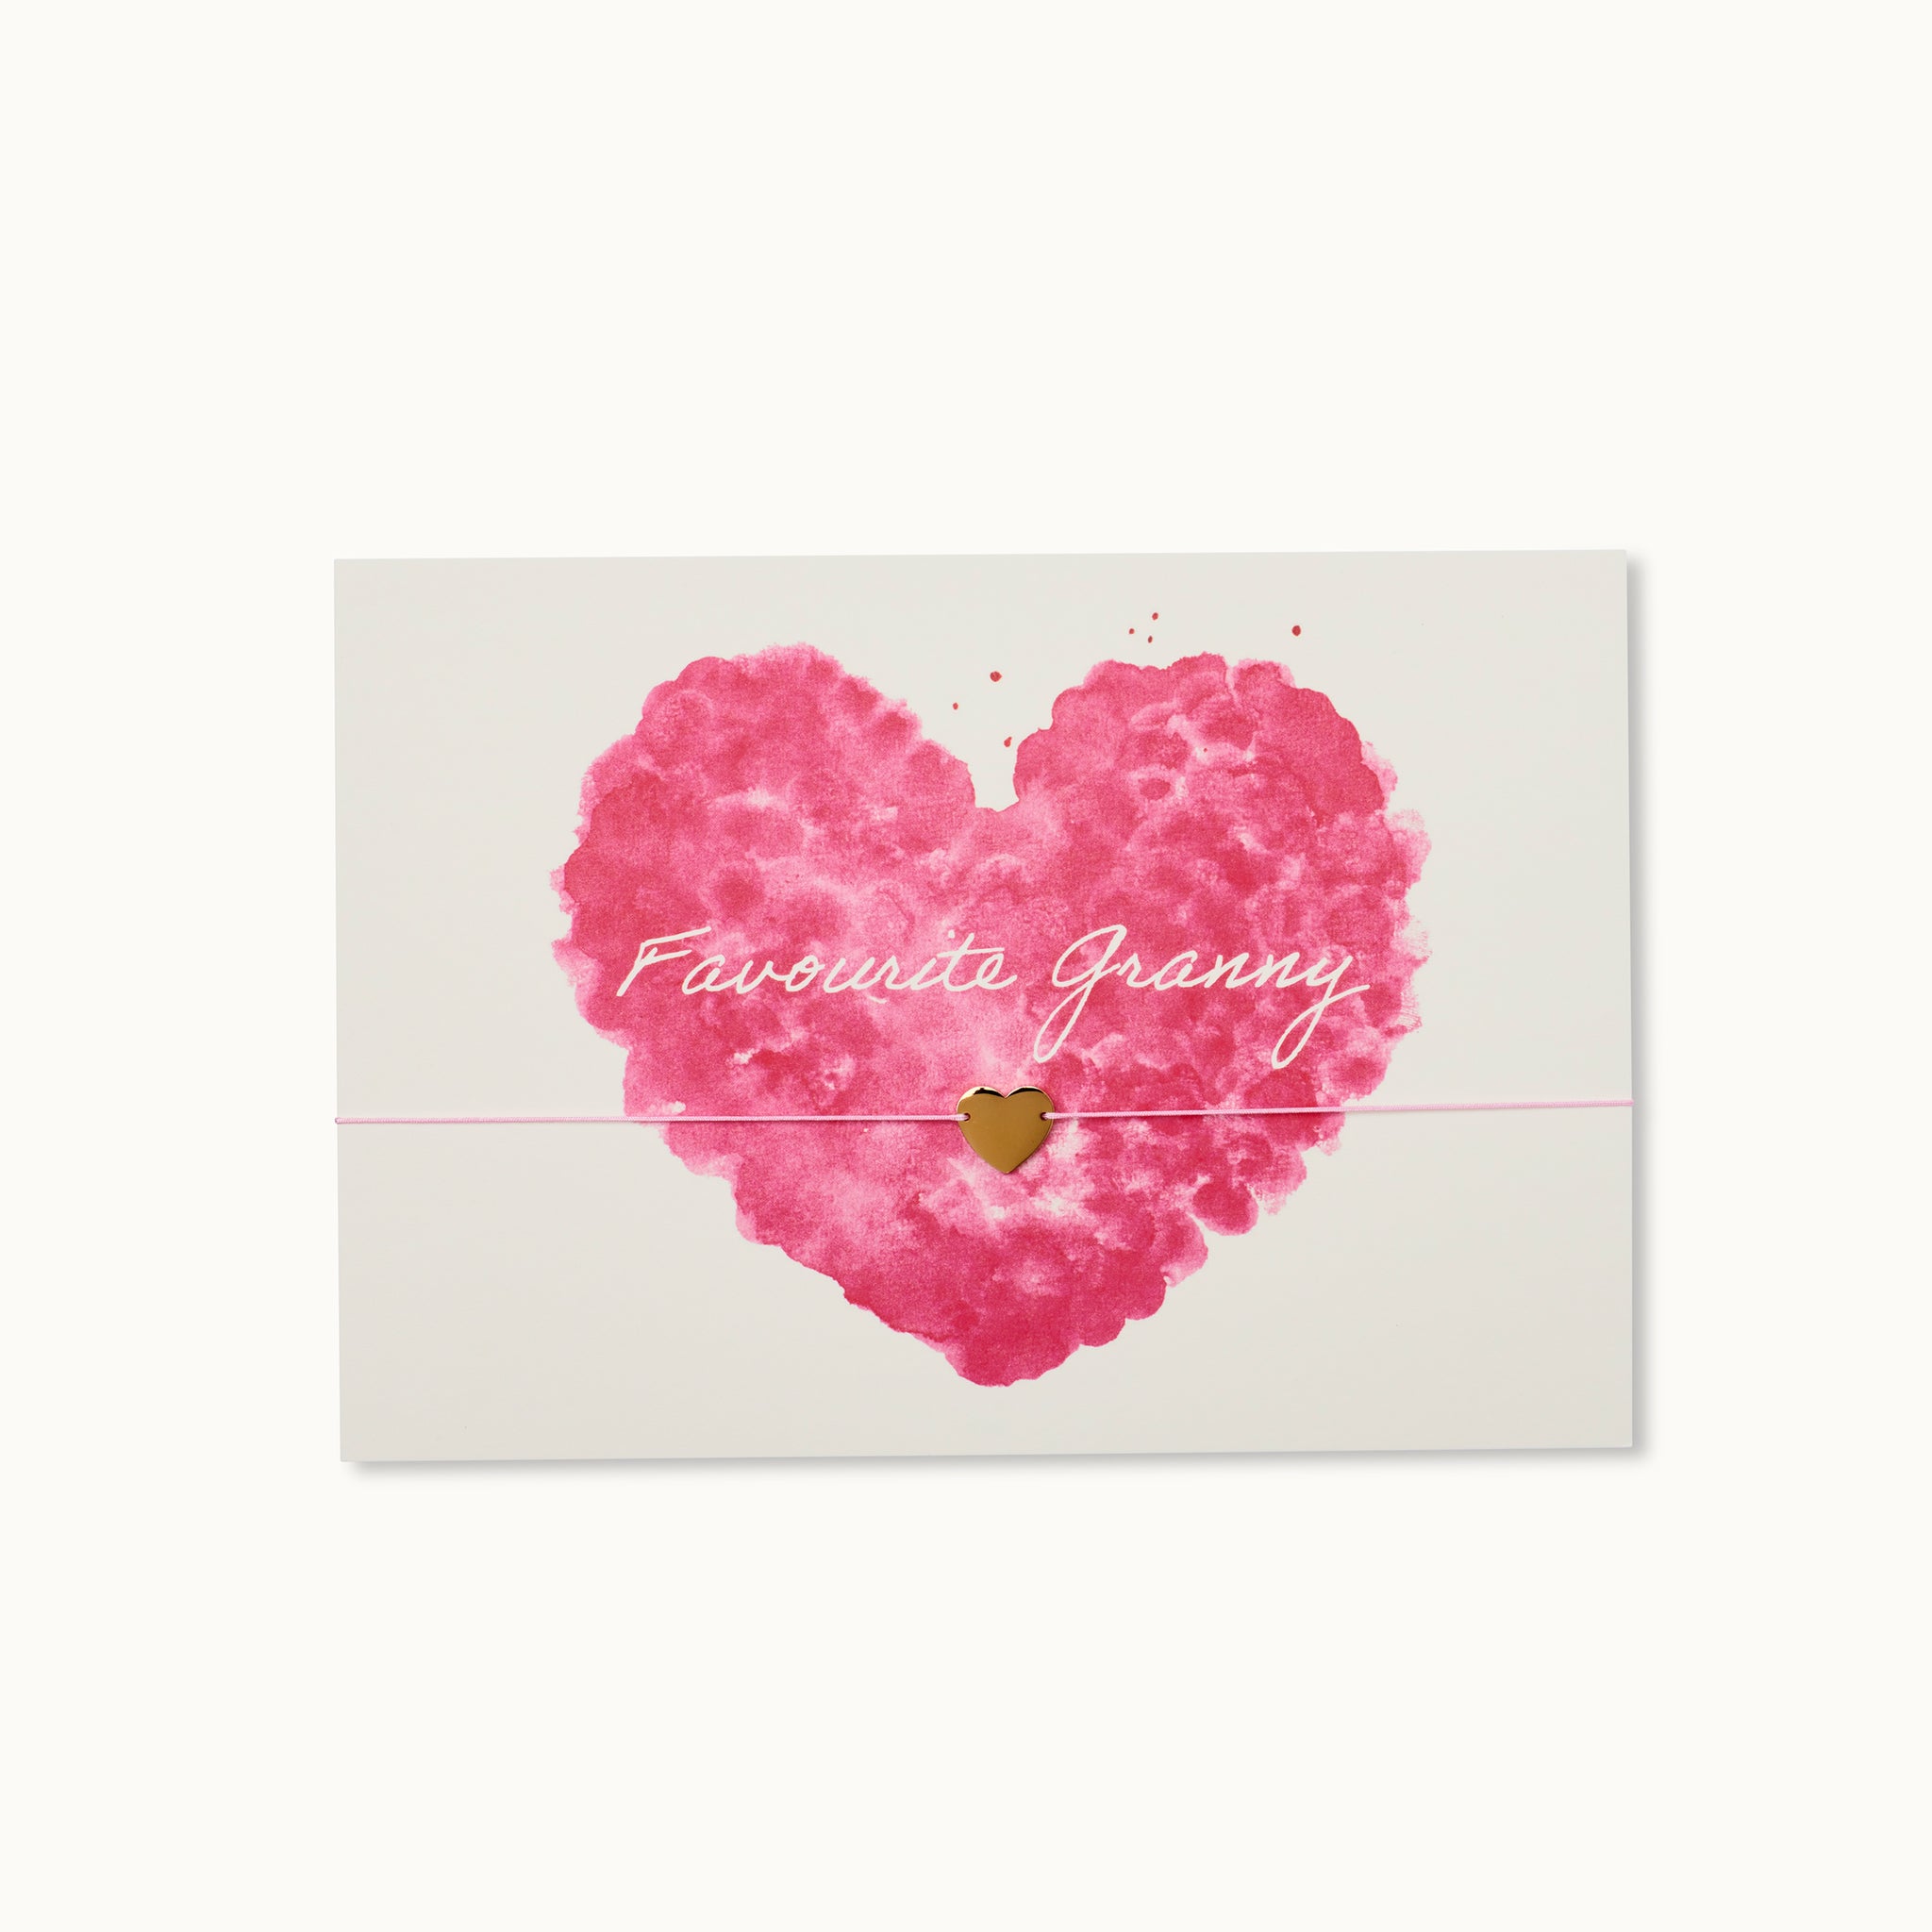 Favourite Granny! Die perfekte Karte für jede Lieblingsoma mit einem Herz als 18K vergoldeter Anhänger an einem rosafarbenen Armband. 